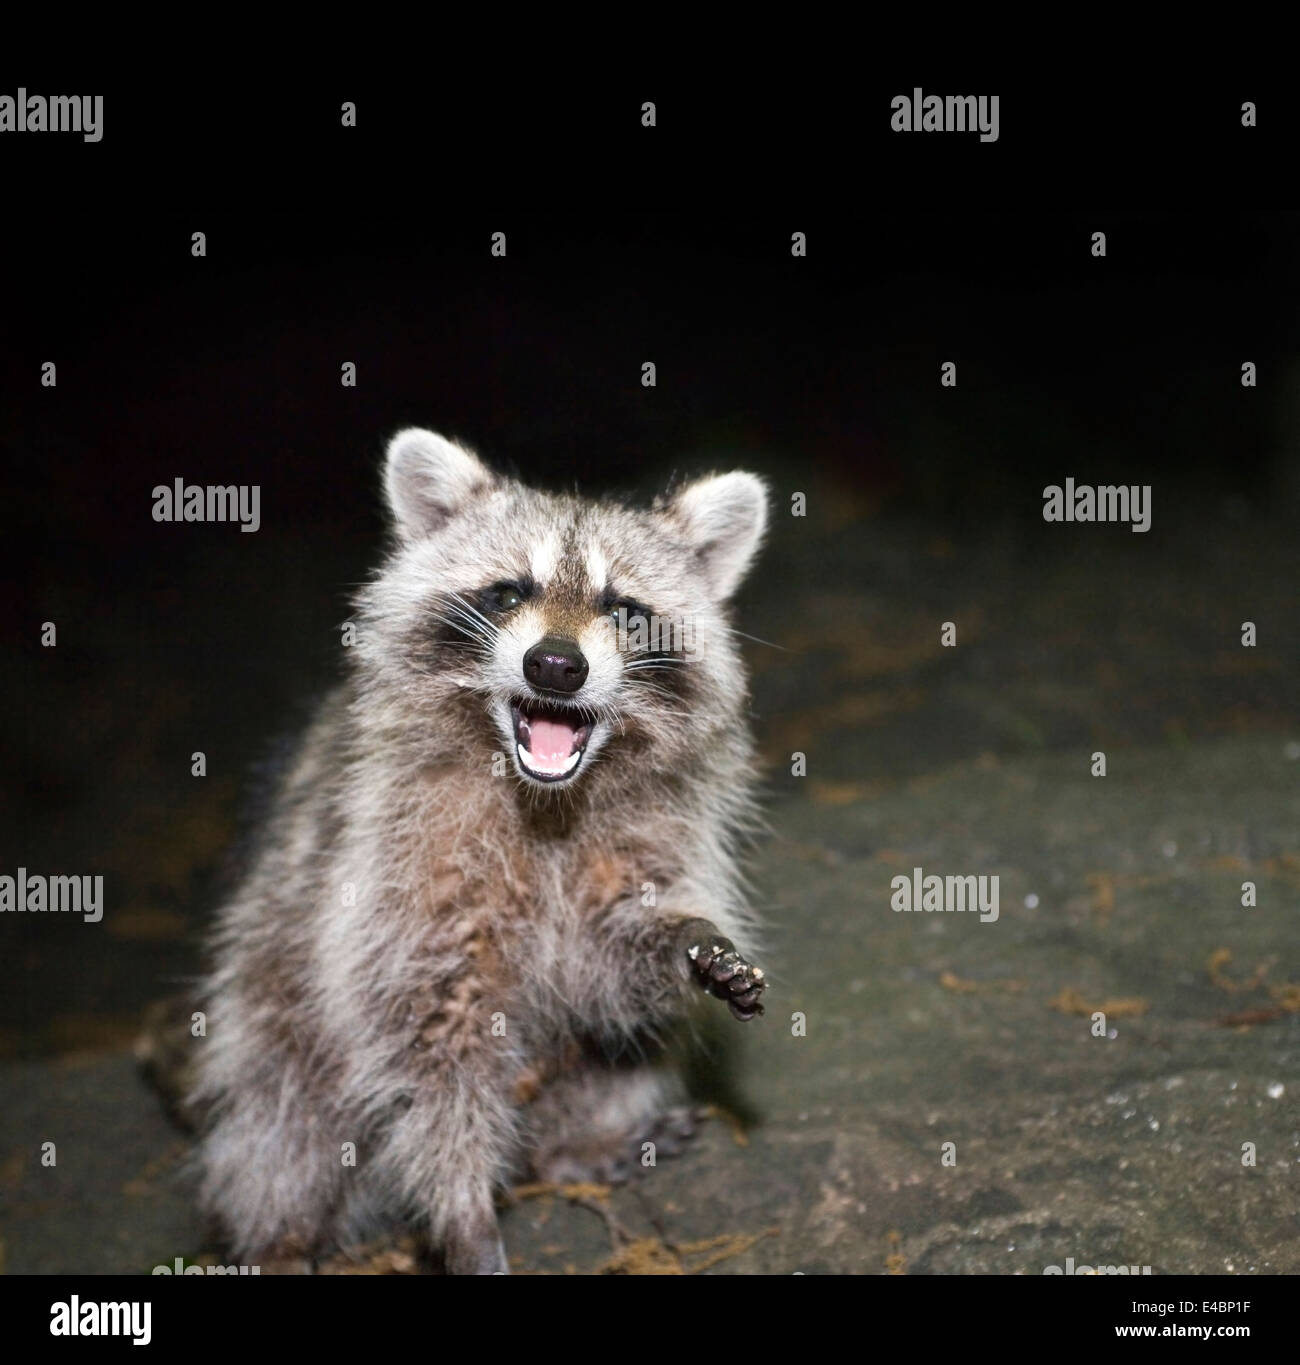 Photo de Raccoon prises la nuit à l'intérieur de Central Park à New York City, USA. Banque D'Images